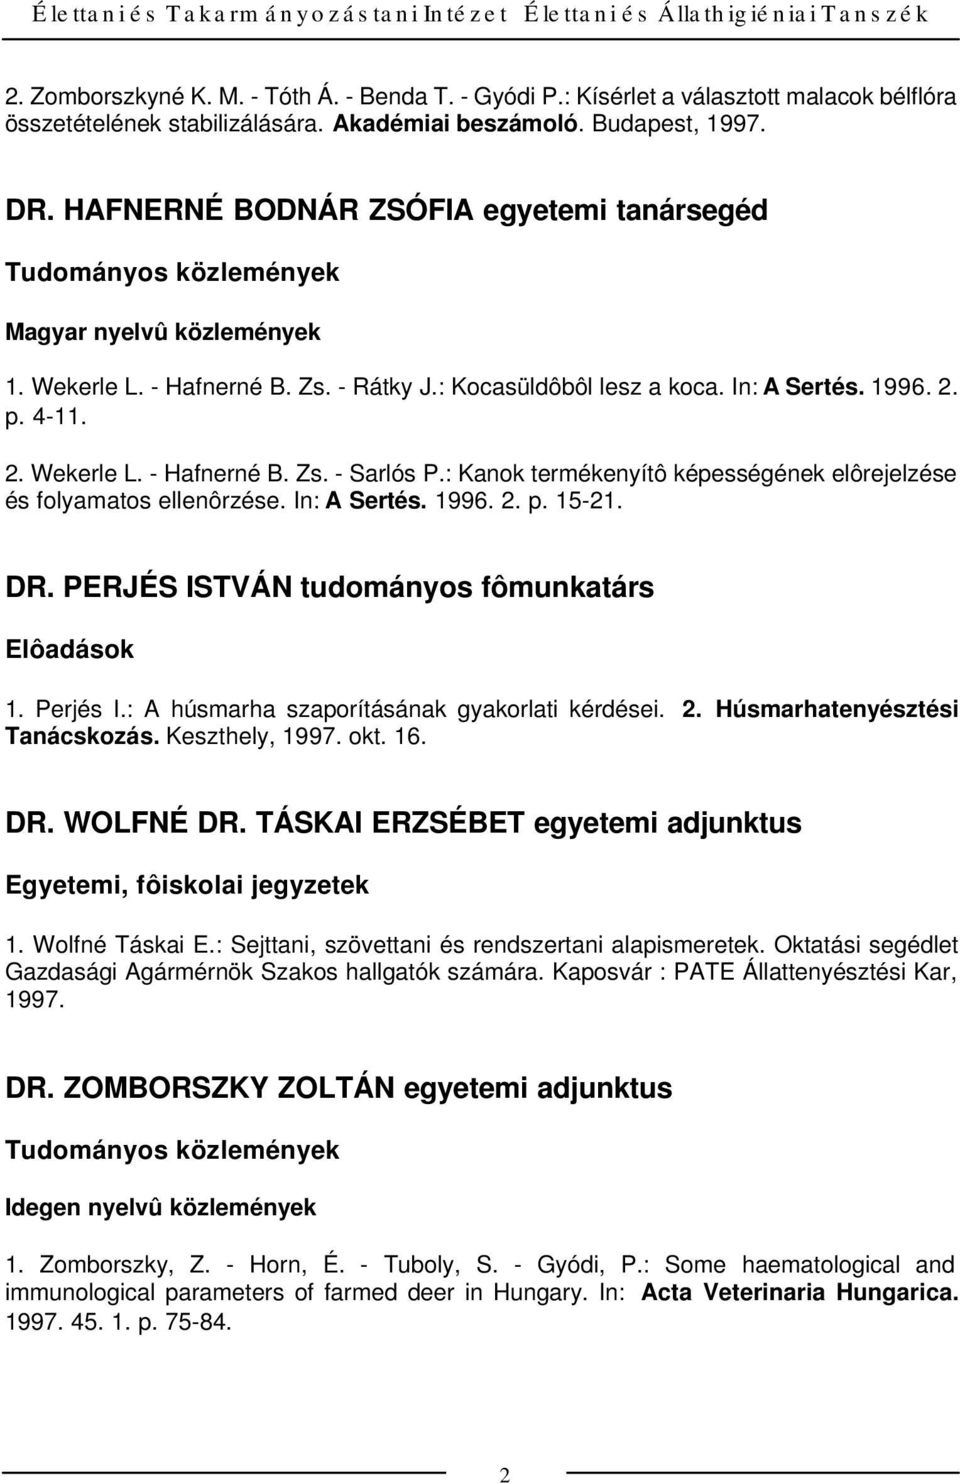 2. p. 4-11. 2. Wekerle L. - Hafnerné B. Zs. - Sarlós P.: Kanok termékenyítô képességének elôrejelzése és folyamatos ellenôrzése. In: A Sertés. 1996. 2. p. 15-21. DR.